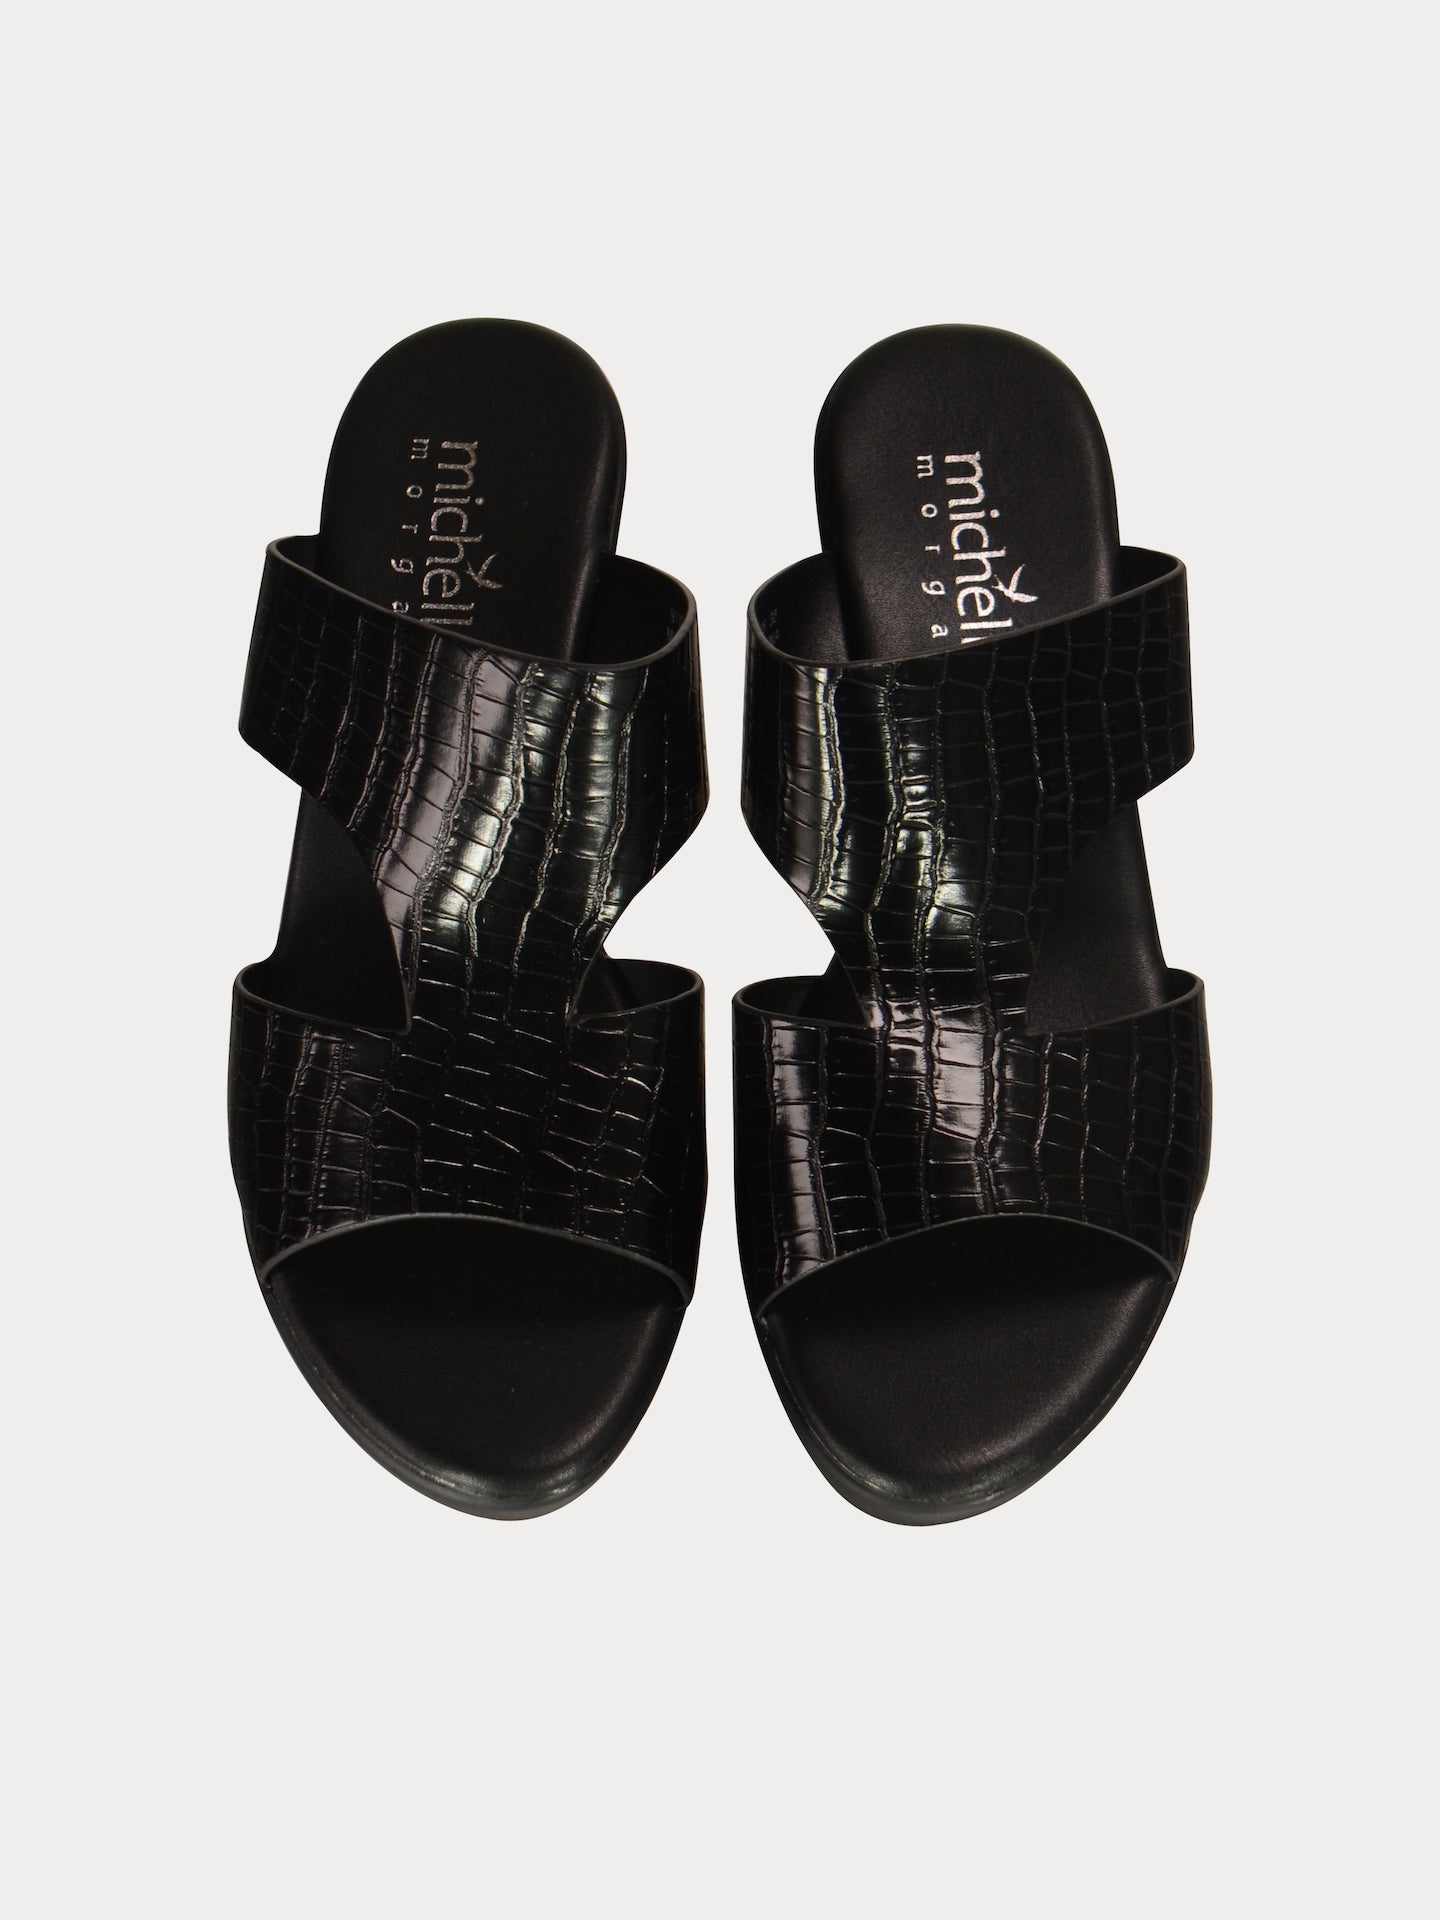 Michelle Morgan 913RJ095 Women's Heeled Sandals #color_Black